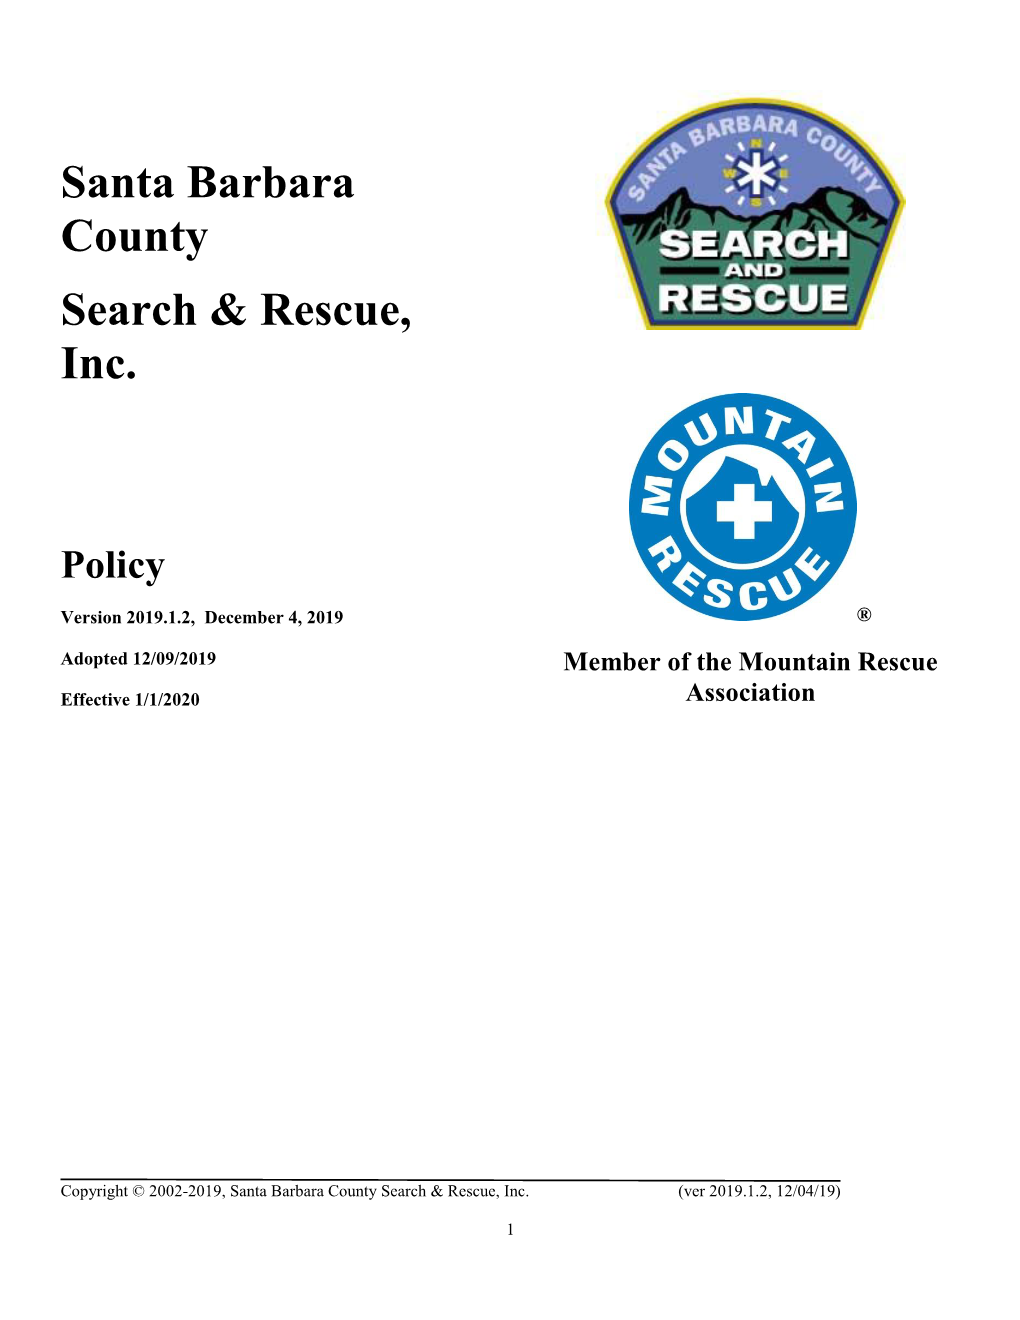 Santa Barbara County Search & Rescue, Inc